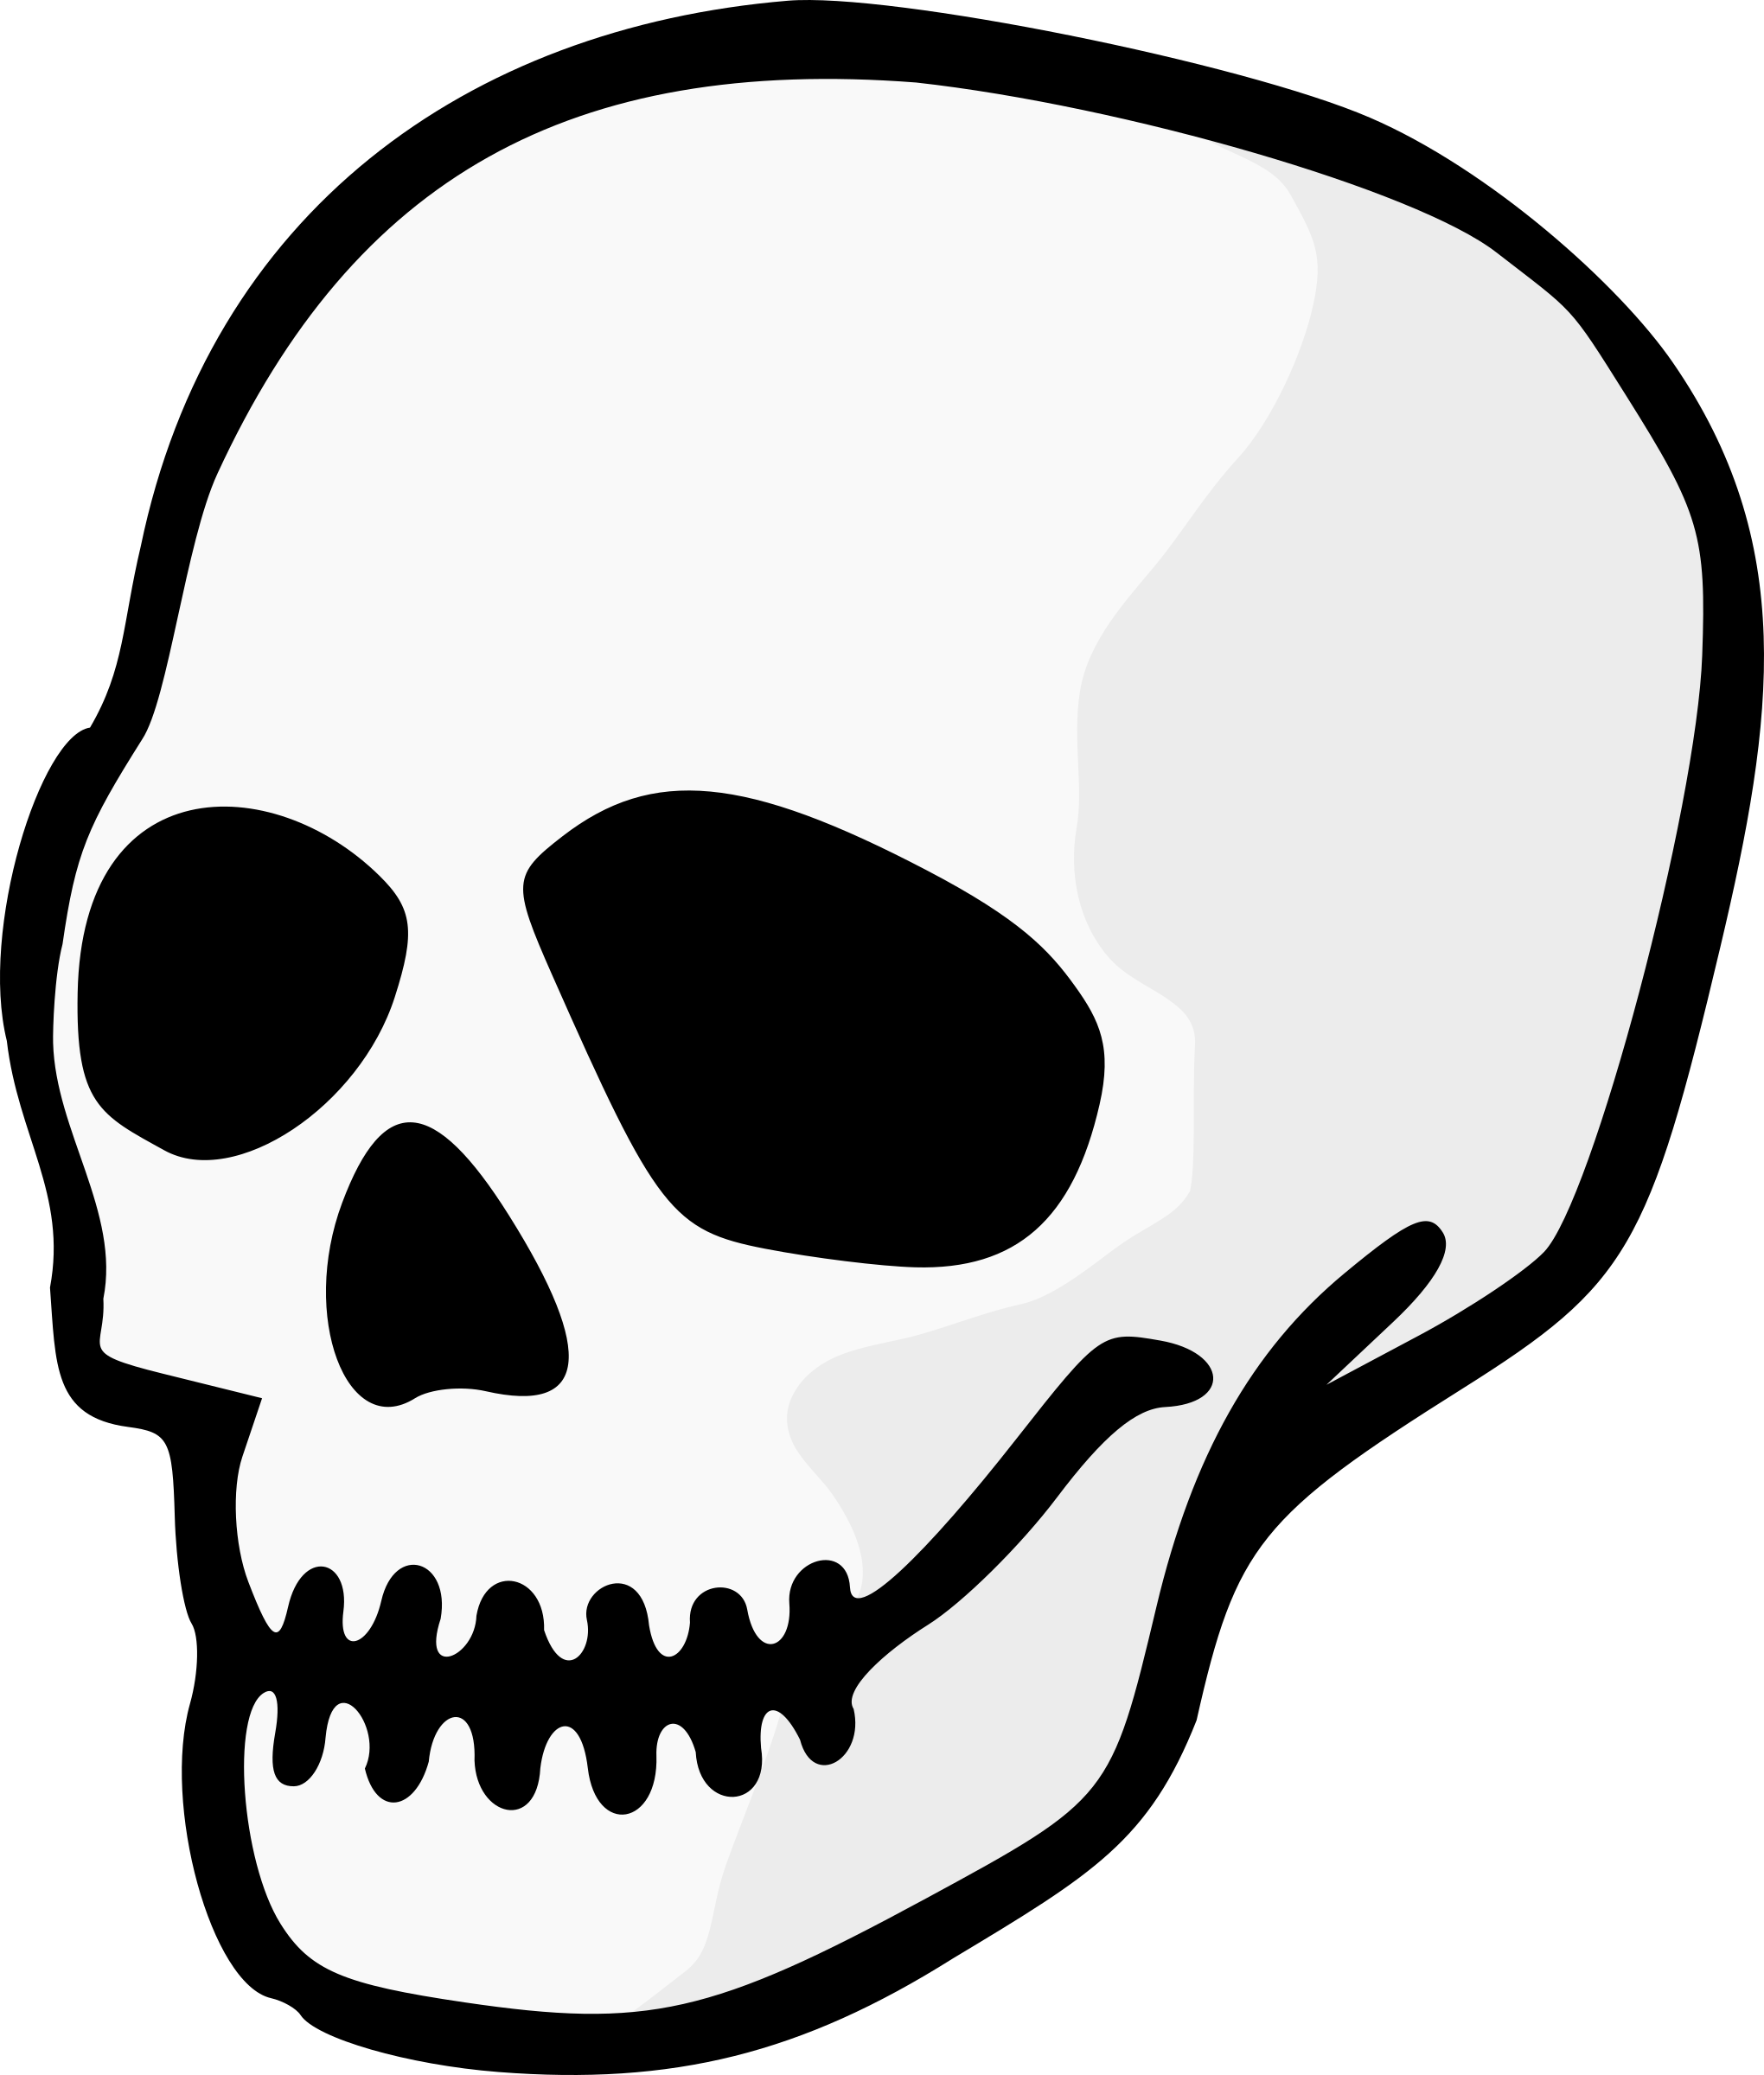 Clipart - Skull